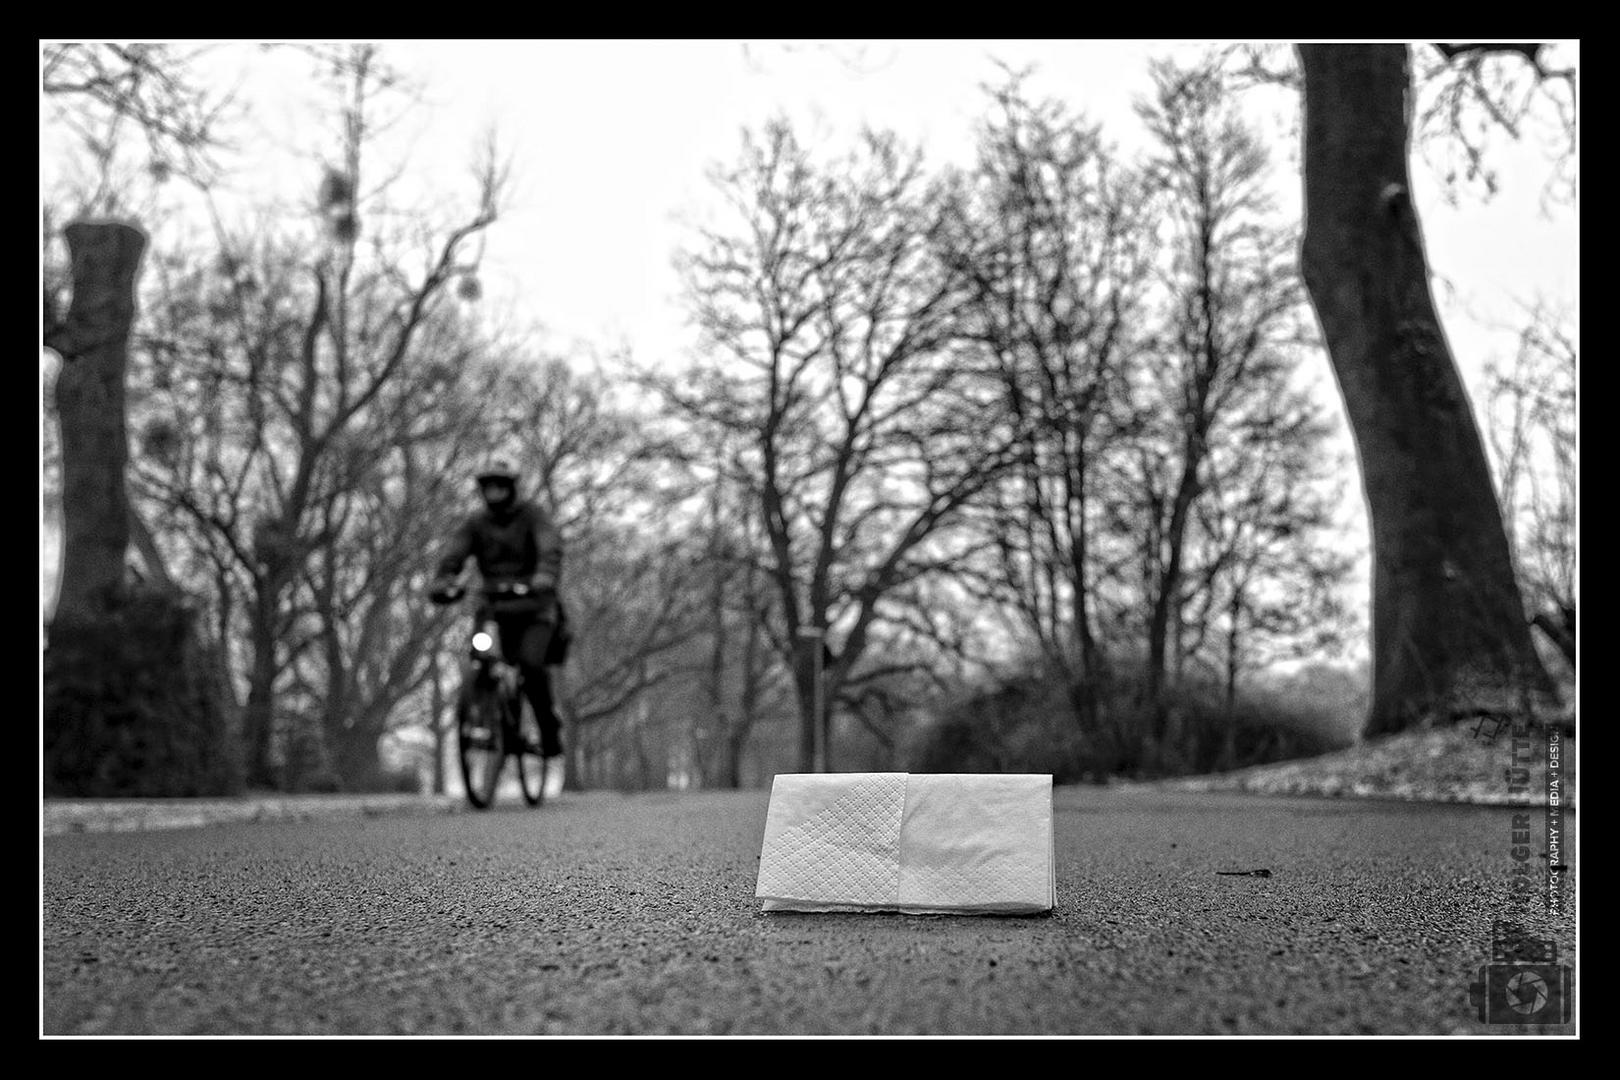 Papiertaschentuch auf dem Radweg